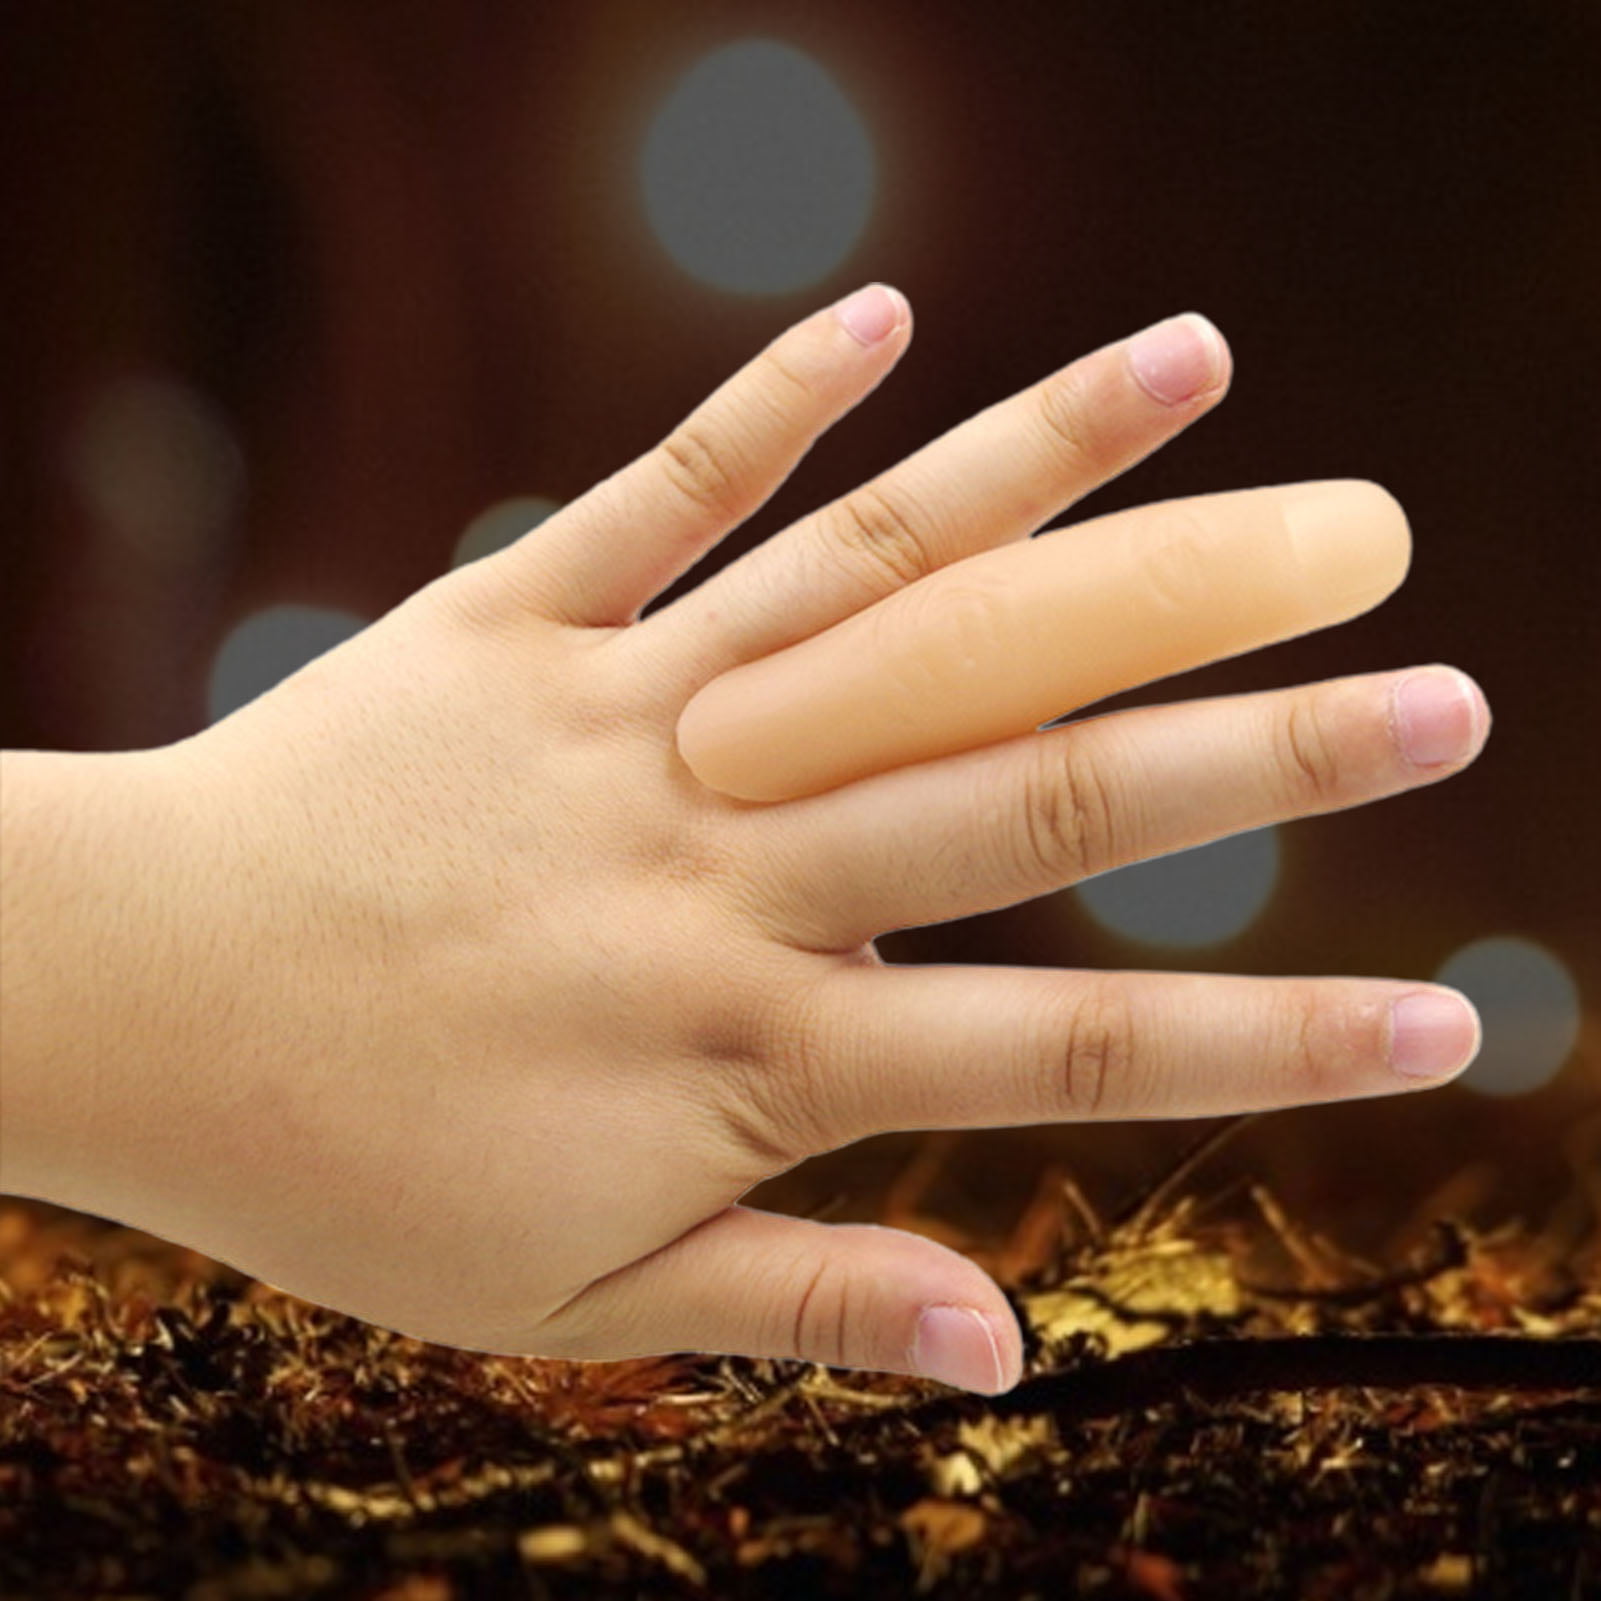 5 Pcs Magic Thumb Tip Trick Rubber Close Up Vanish Appearing Finger Trick Props 